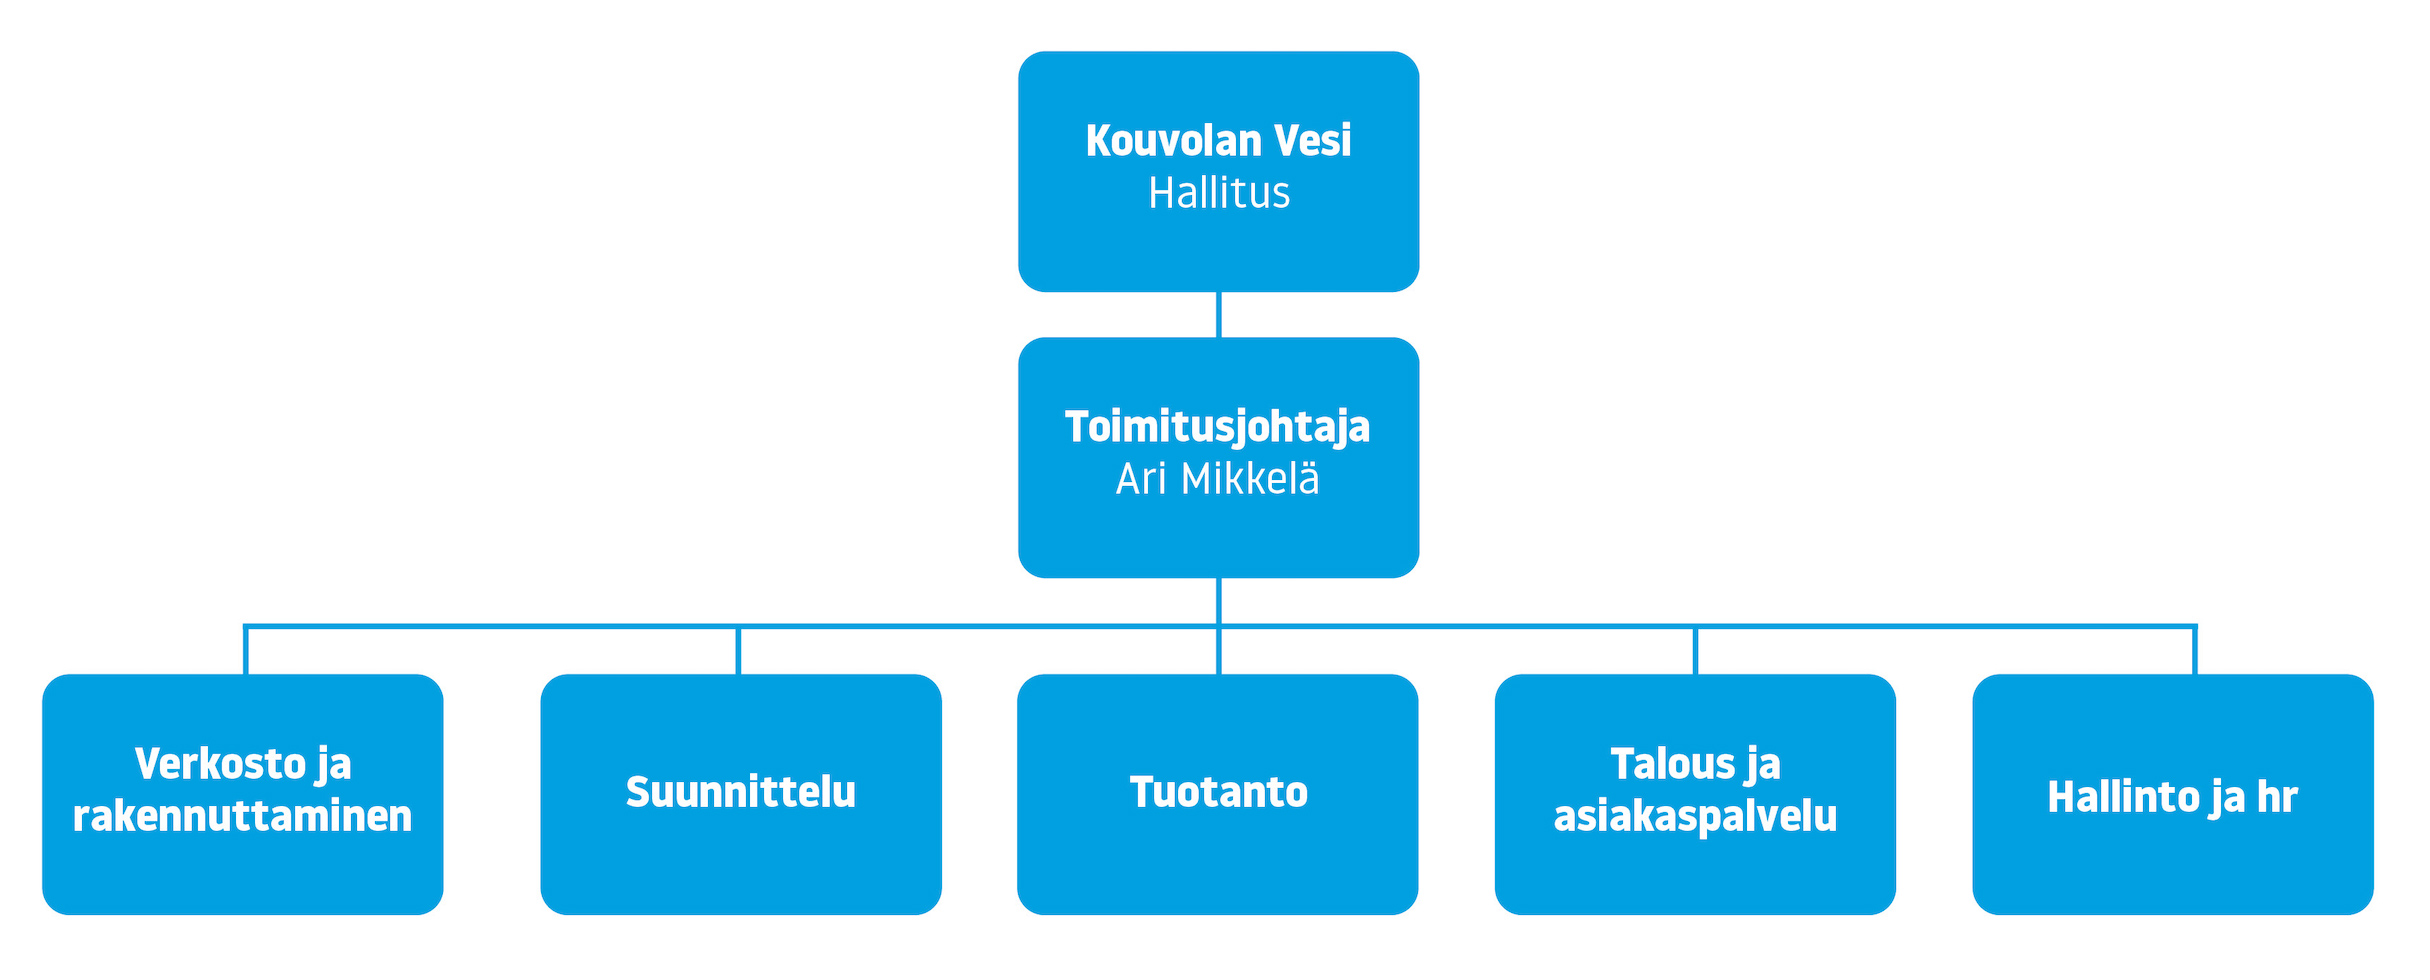 Kouvolan Veden organisaatiossa ylinnä hallitus, jonka alla toimitusjohtaja Ari Mikkelä ja näiden alla verkosto ja rakennuttaminen, suunnittelu, tuotanto, talous ja asiakaspalvelu sekä hallinto ja hr.